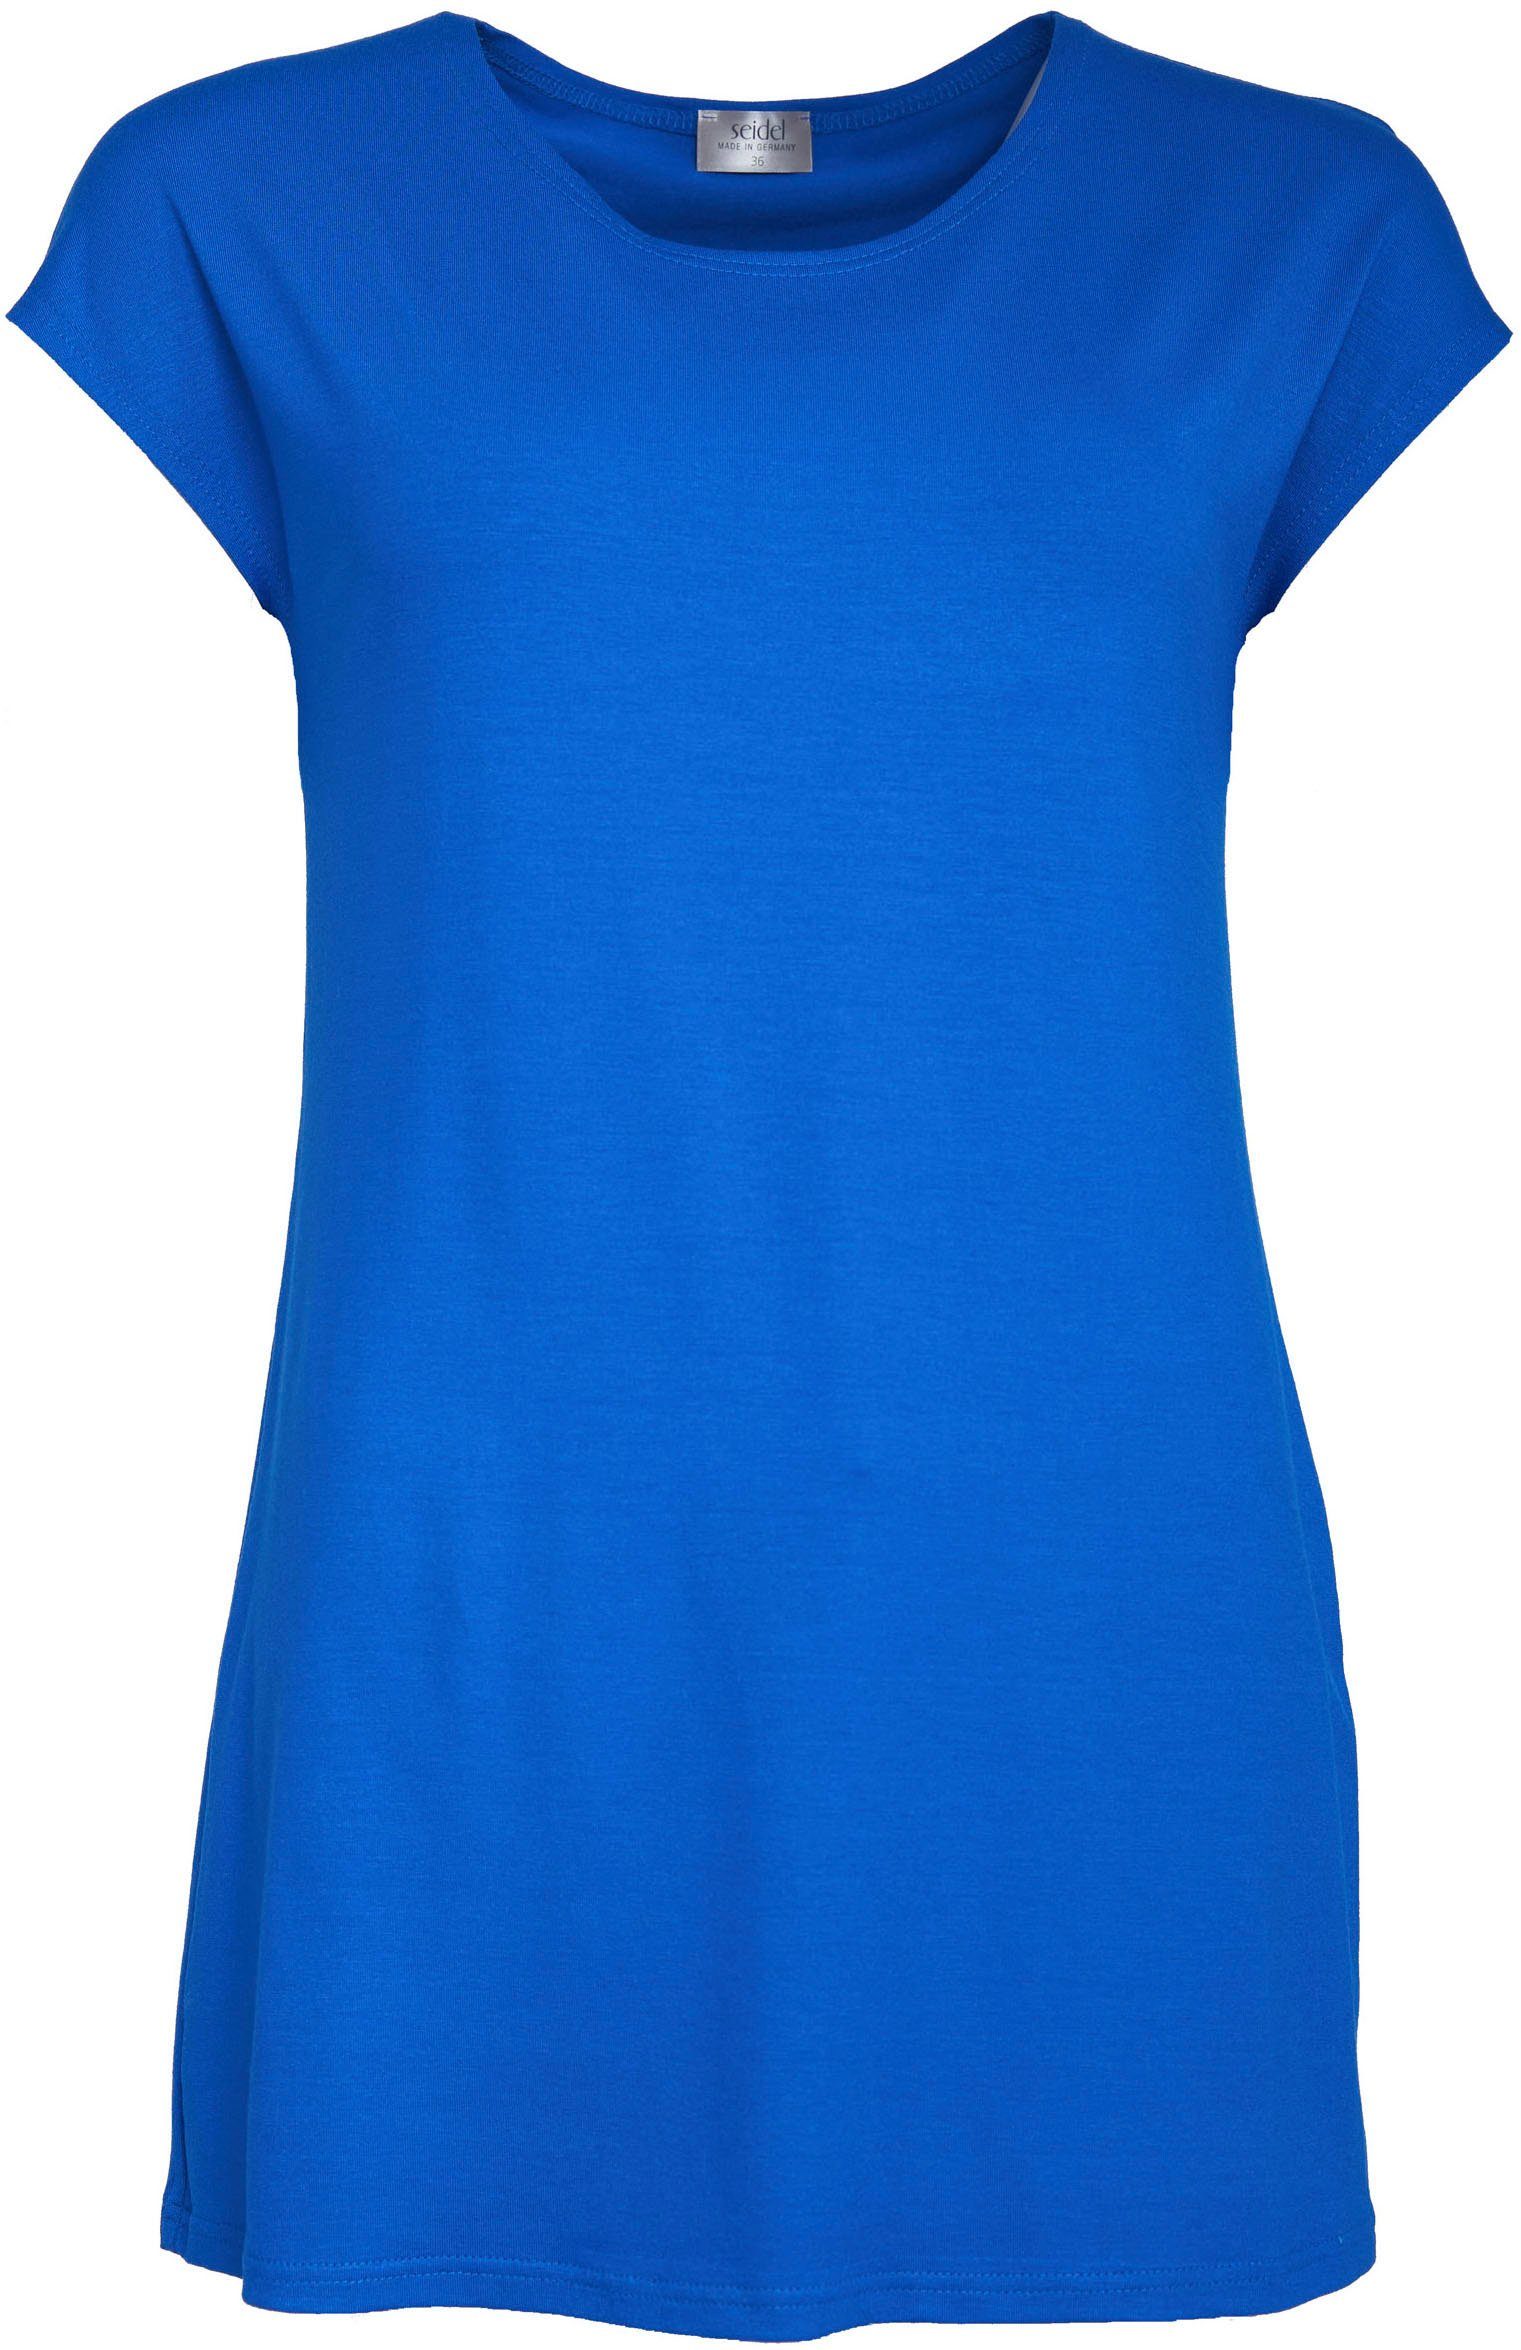 Seidel Moden Longshirt in schlichtem Design blau